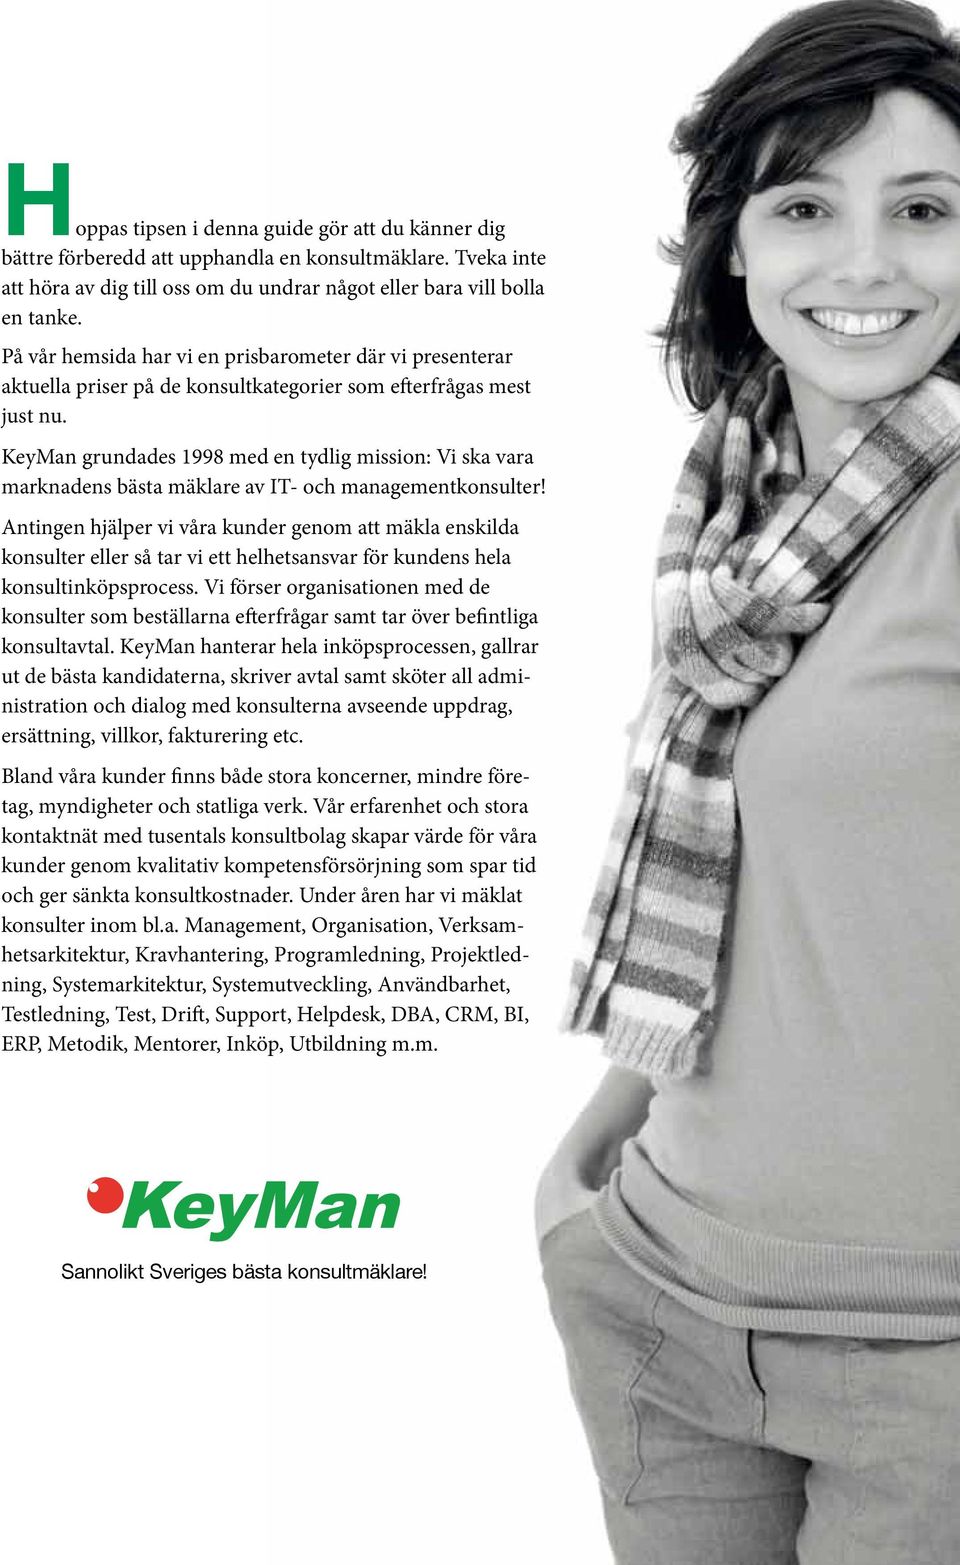 KeyMan grundades 1998 med en tydlig mission: Vi ska vara marknadens bästa mäklare av IT- och managementkonsulter!